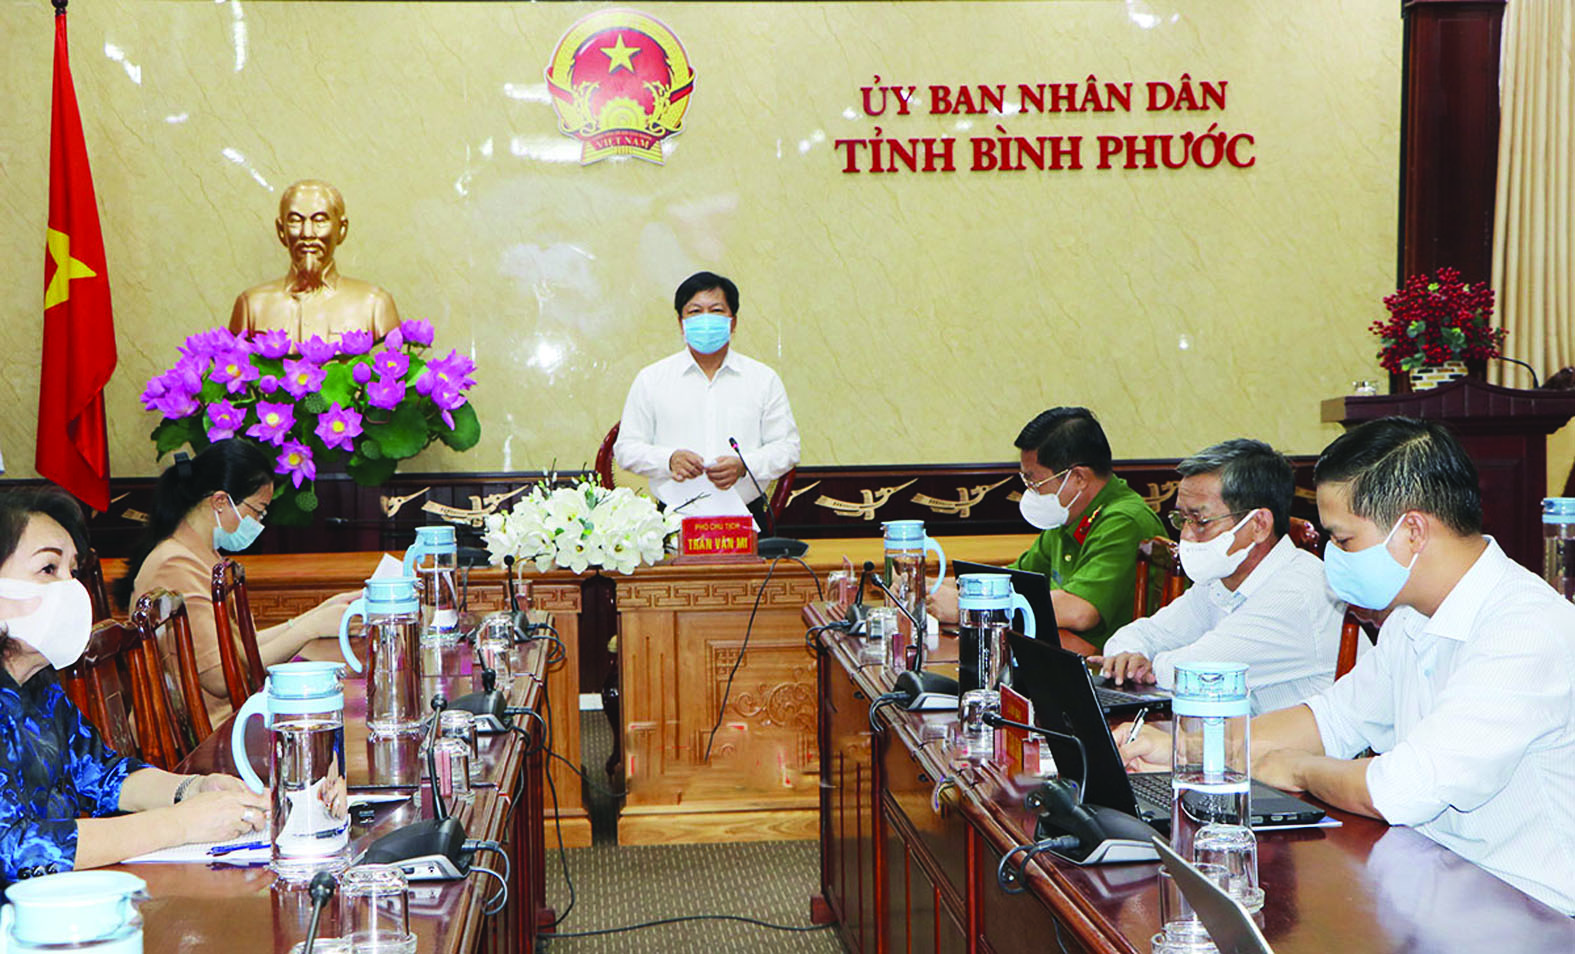  Phó Chủ tịch UBND tỉnh Bình Phước Trần Văn Mi chủ trì cuộc họp với các sở, ngành liên quan nhằm phân tích, đánh giá kết quả thực hiện chỉ số năng lực cạnh tranh cấp tỉnh (PCI) 2020 và đề ra phương hướng nhiệm vụ cho năm 2021